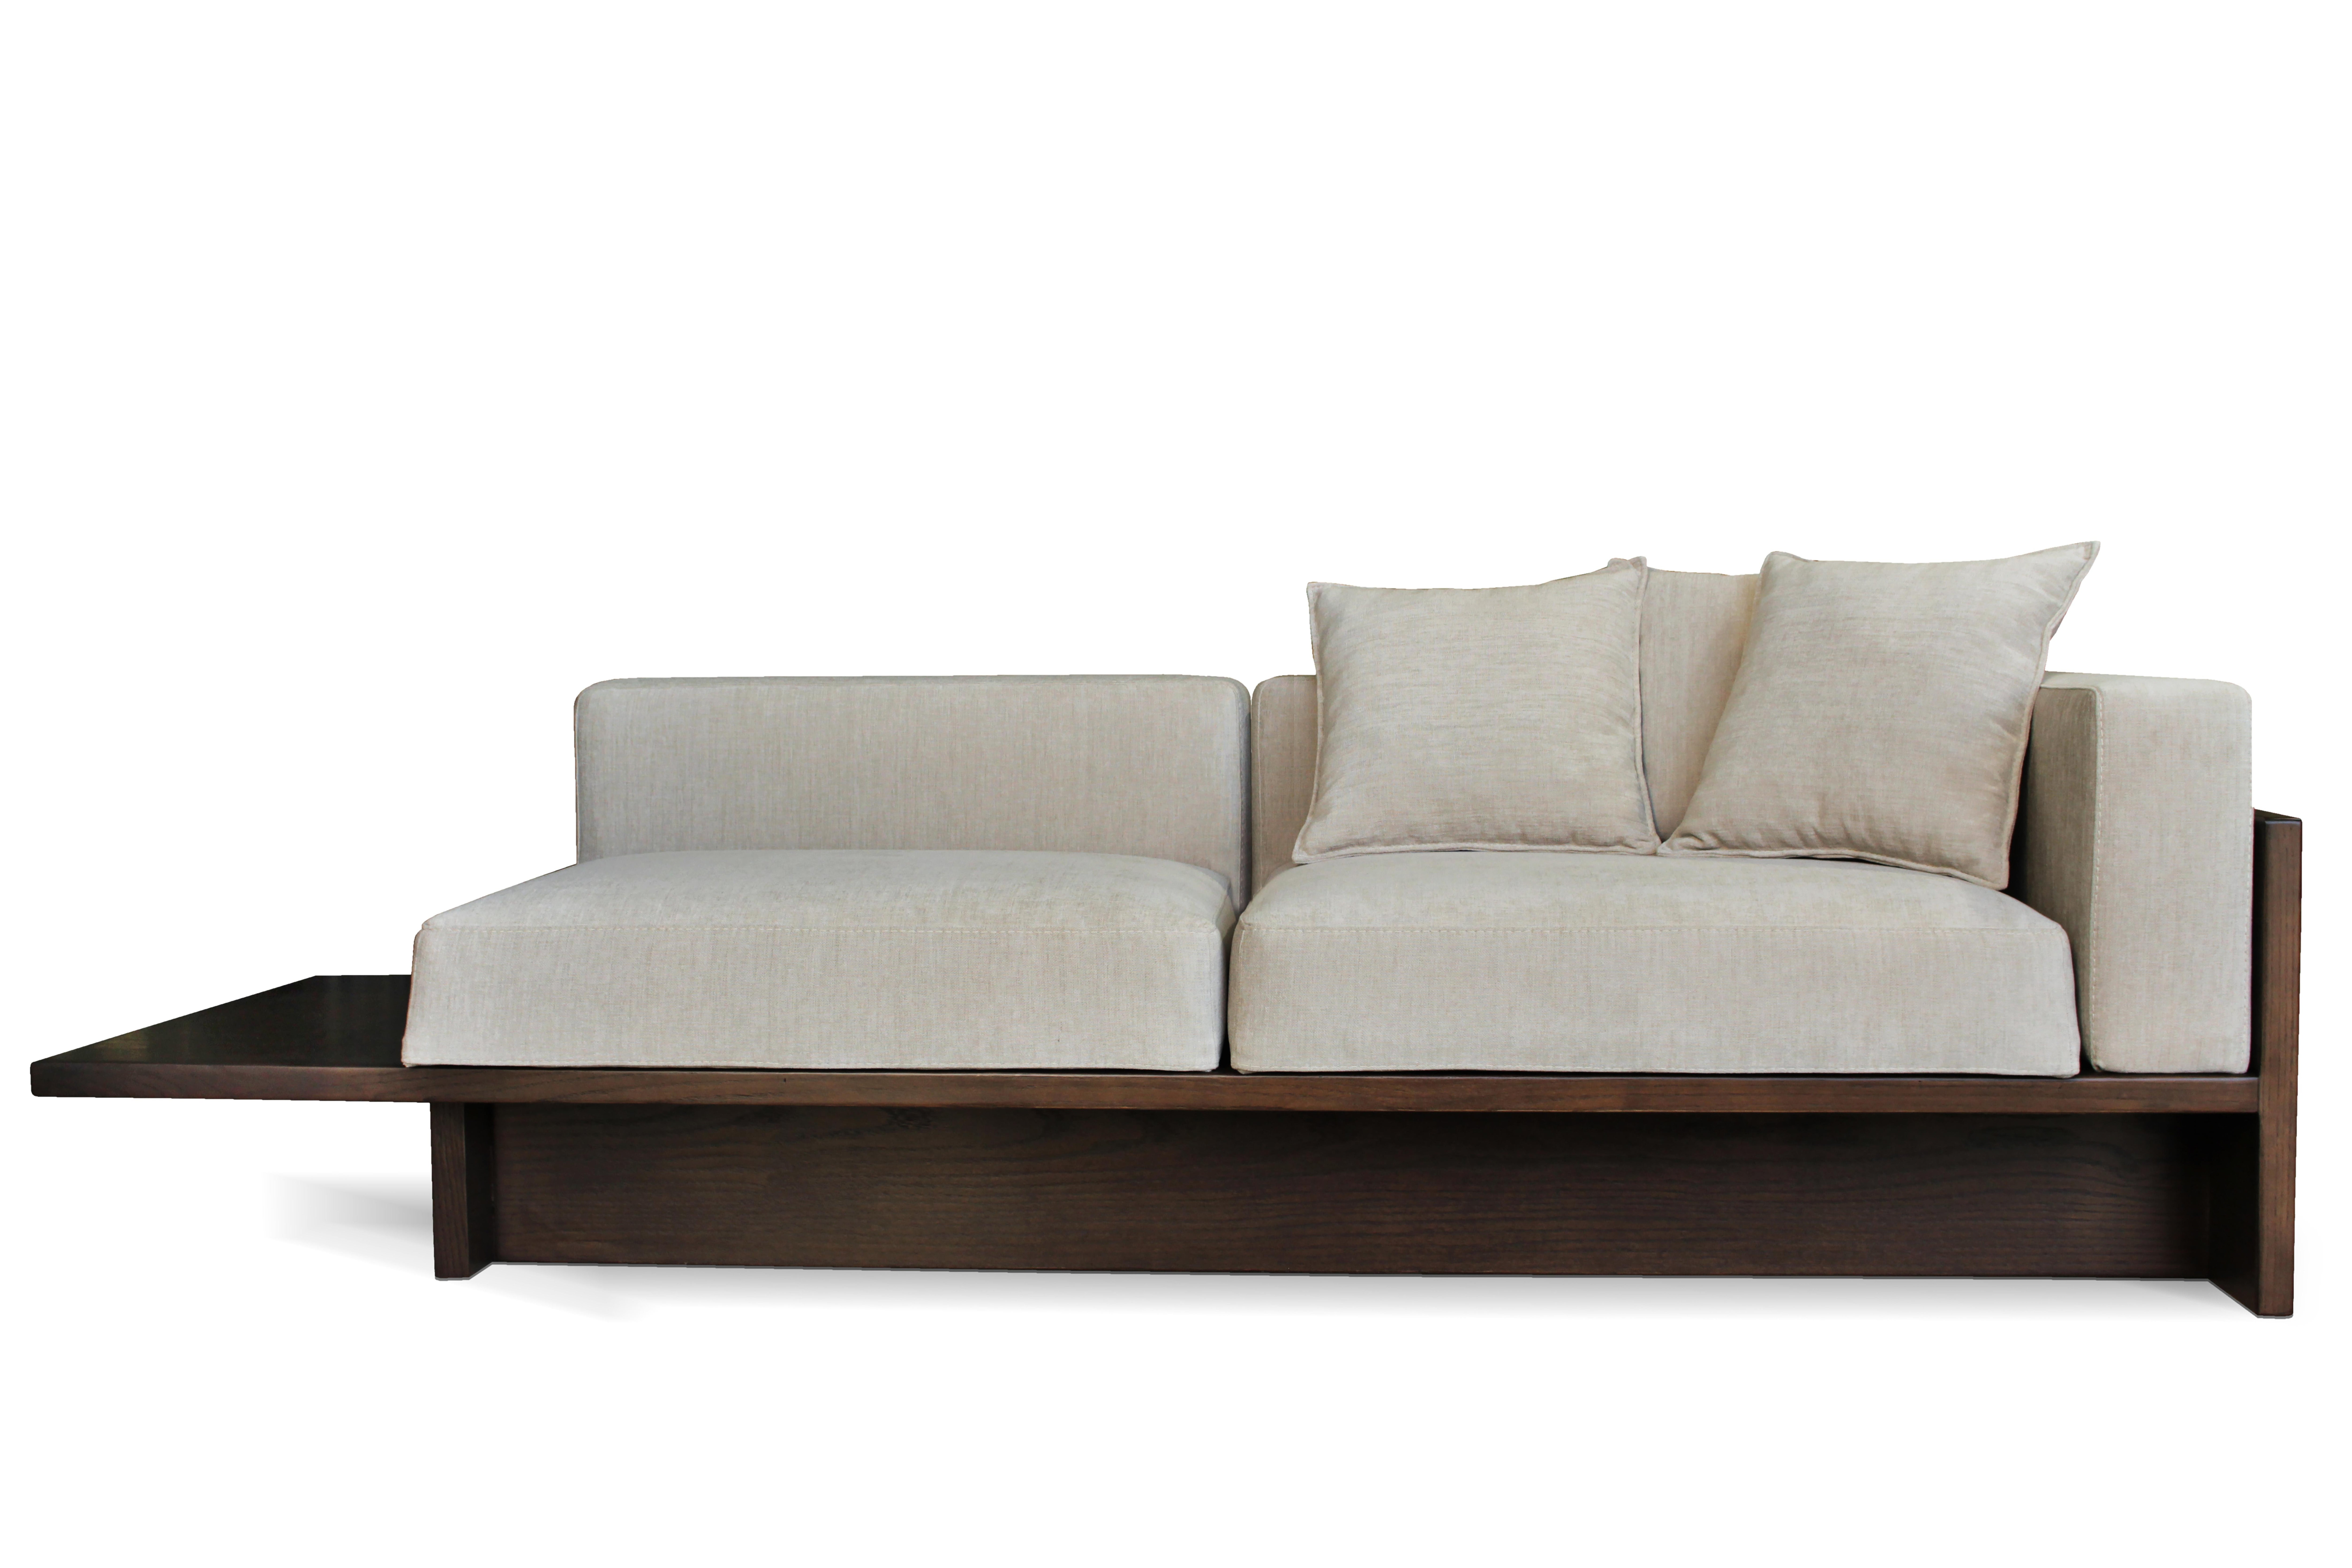 Portuguese Contemporary Modern Chaplin Sofa in White Fabric & Dark Oak by Collector Studio For Sale